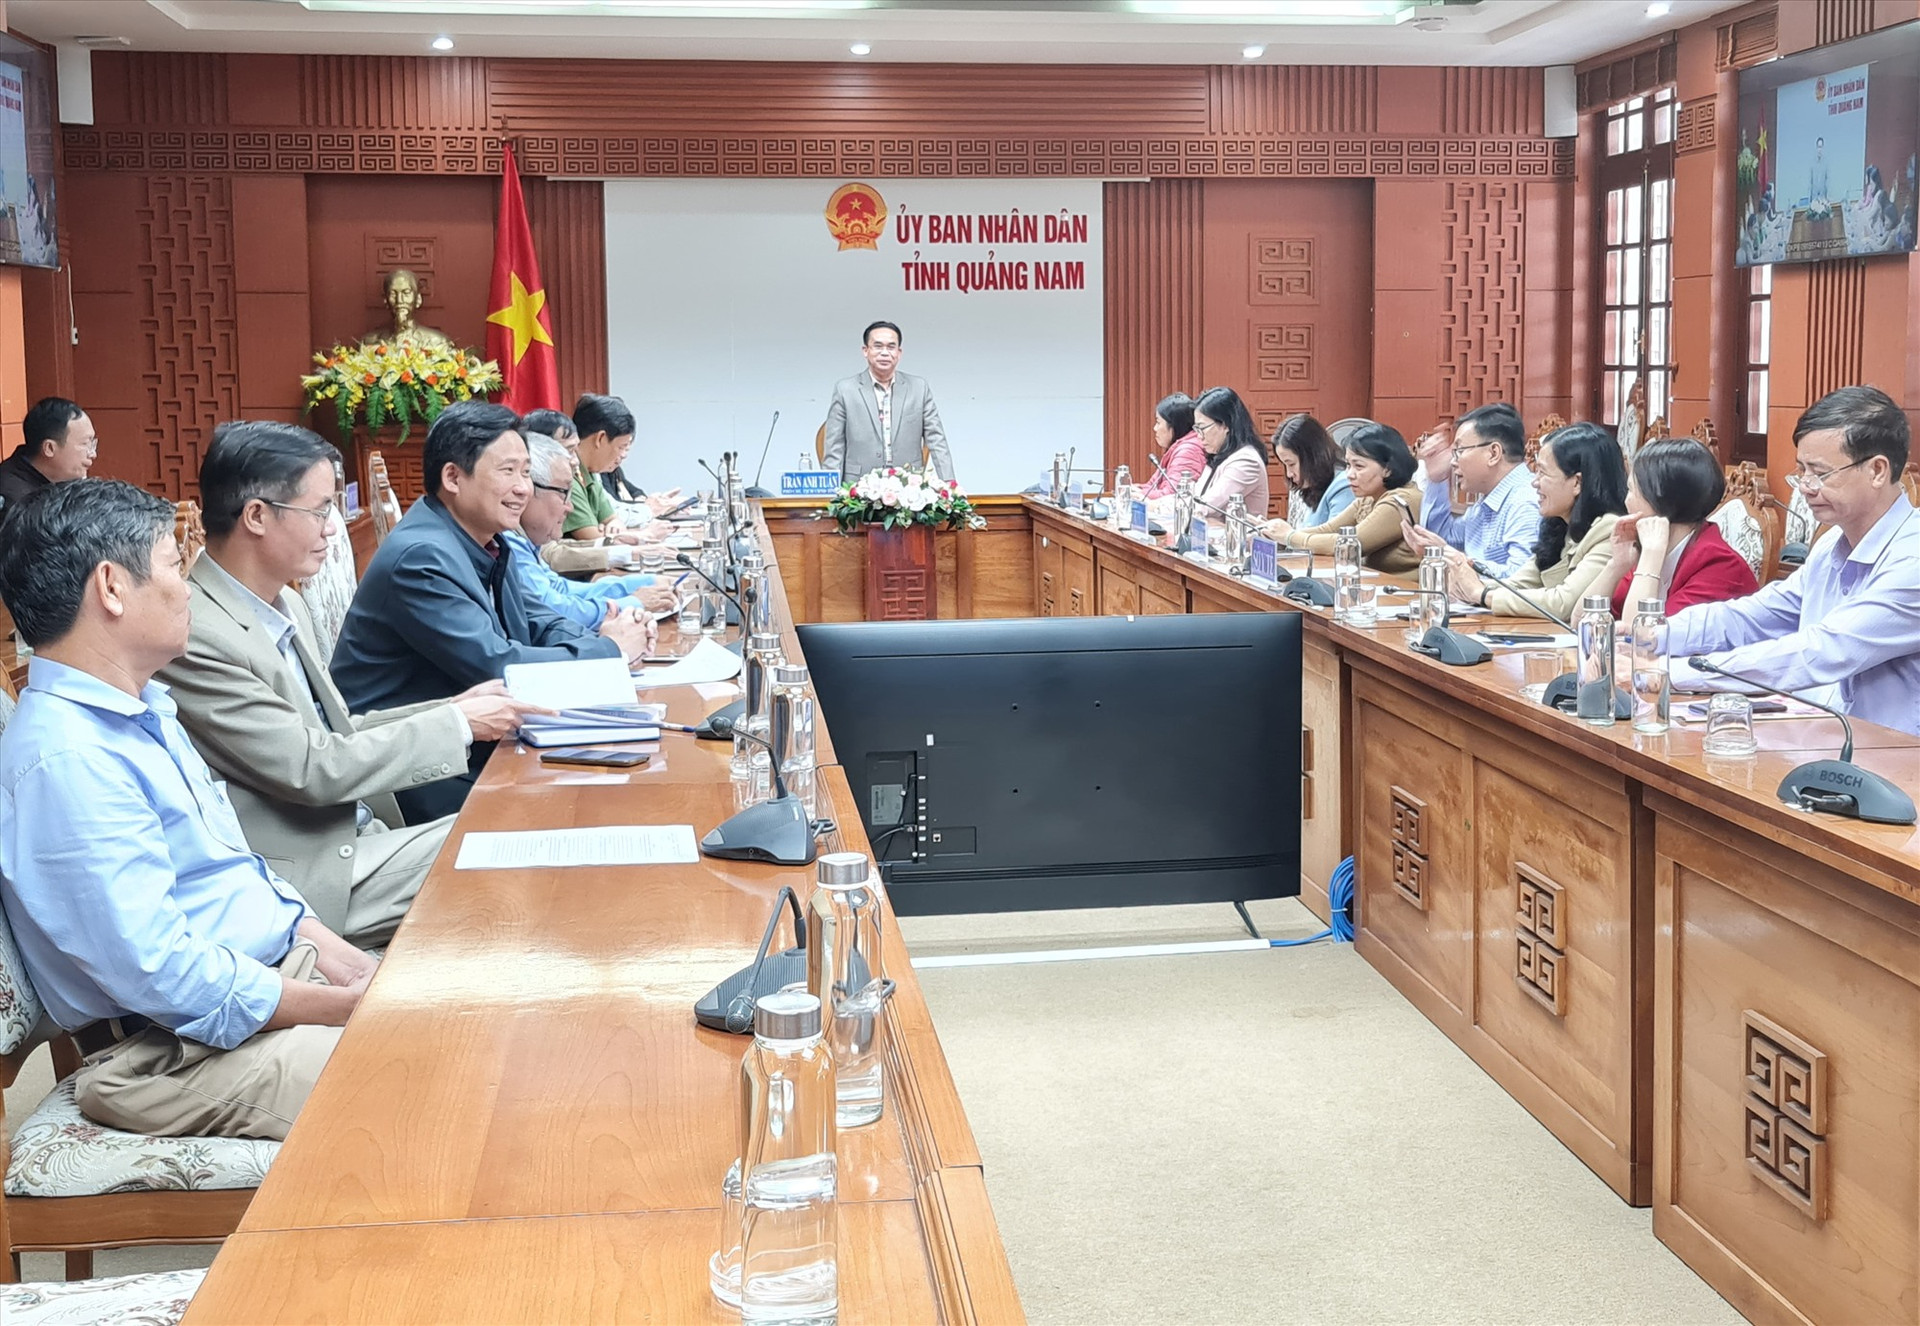 Phó Chủ tịch UBND tỉnh Trần Anh Tuấn yêu cầu hoàn thành việc chăm lo tết vào ngày 16/1. Ảnh: D.L